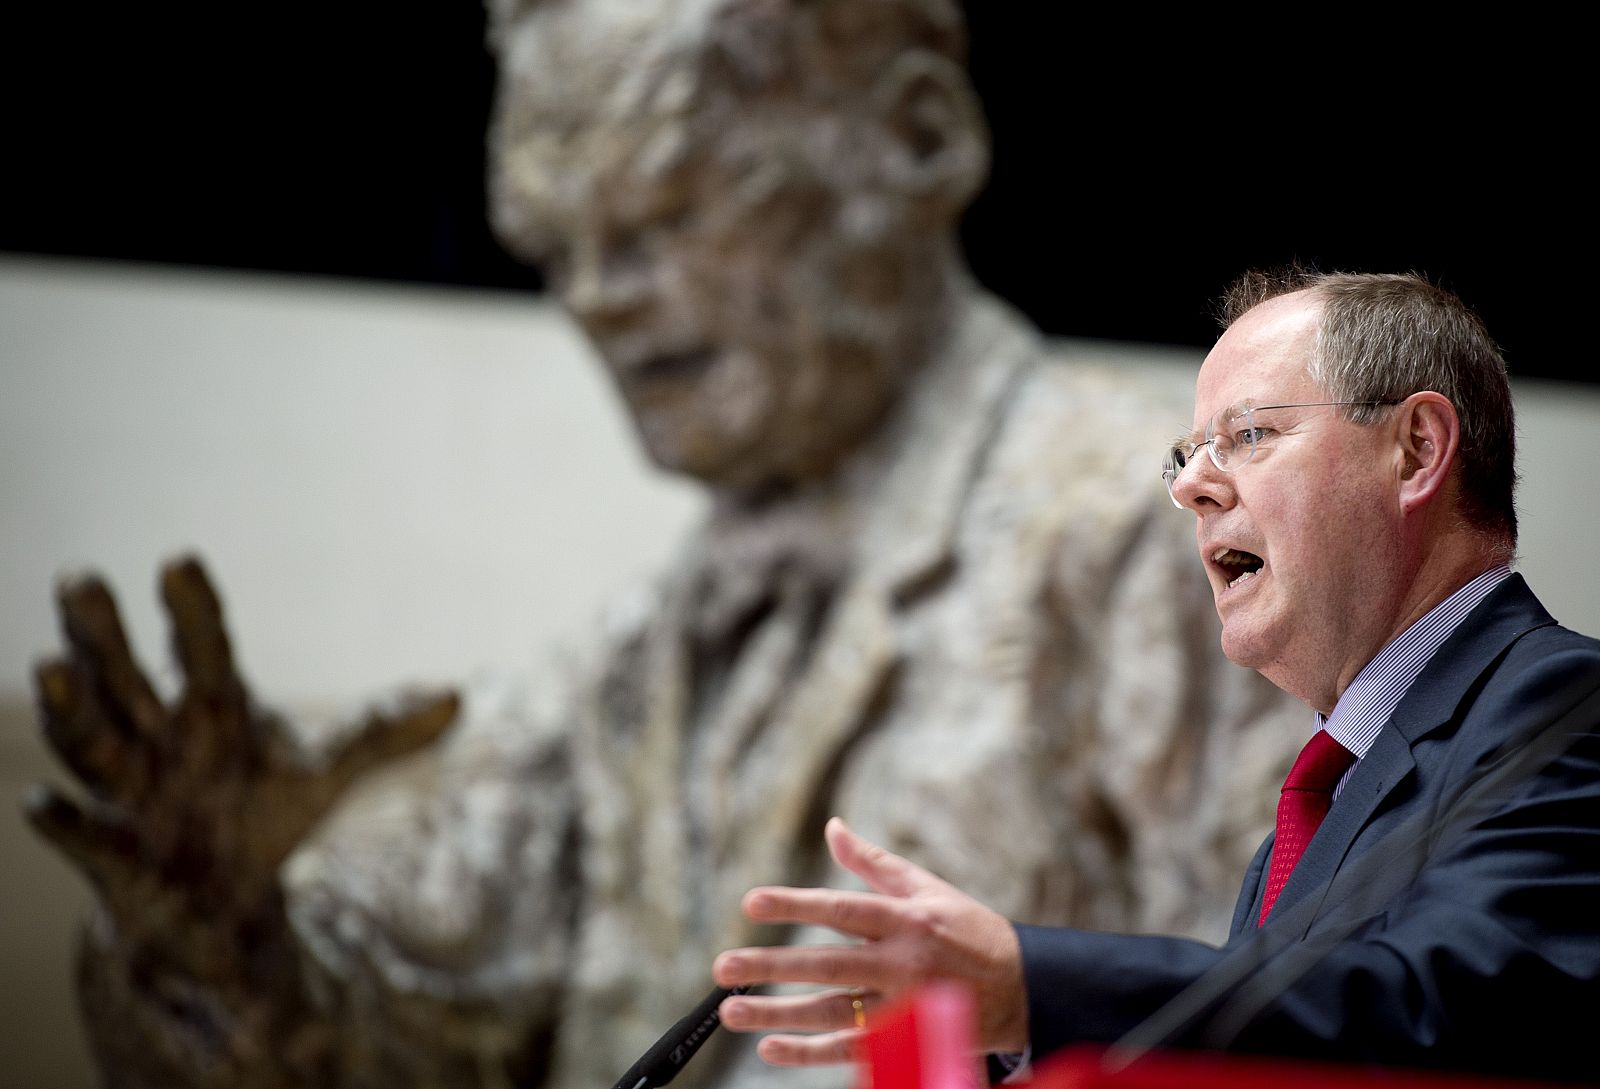 El candidato socialdemócrata, junto a la estatua de Willy Brandt en la sede del partido.